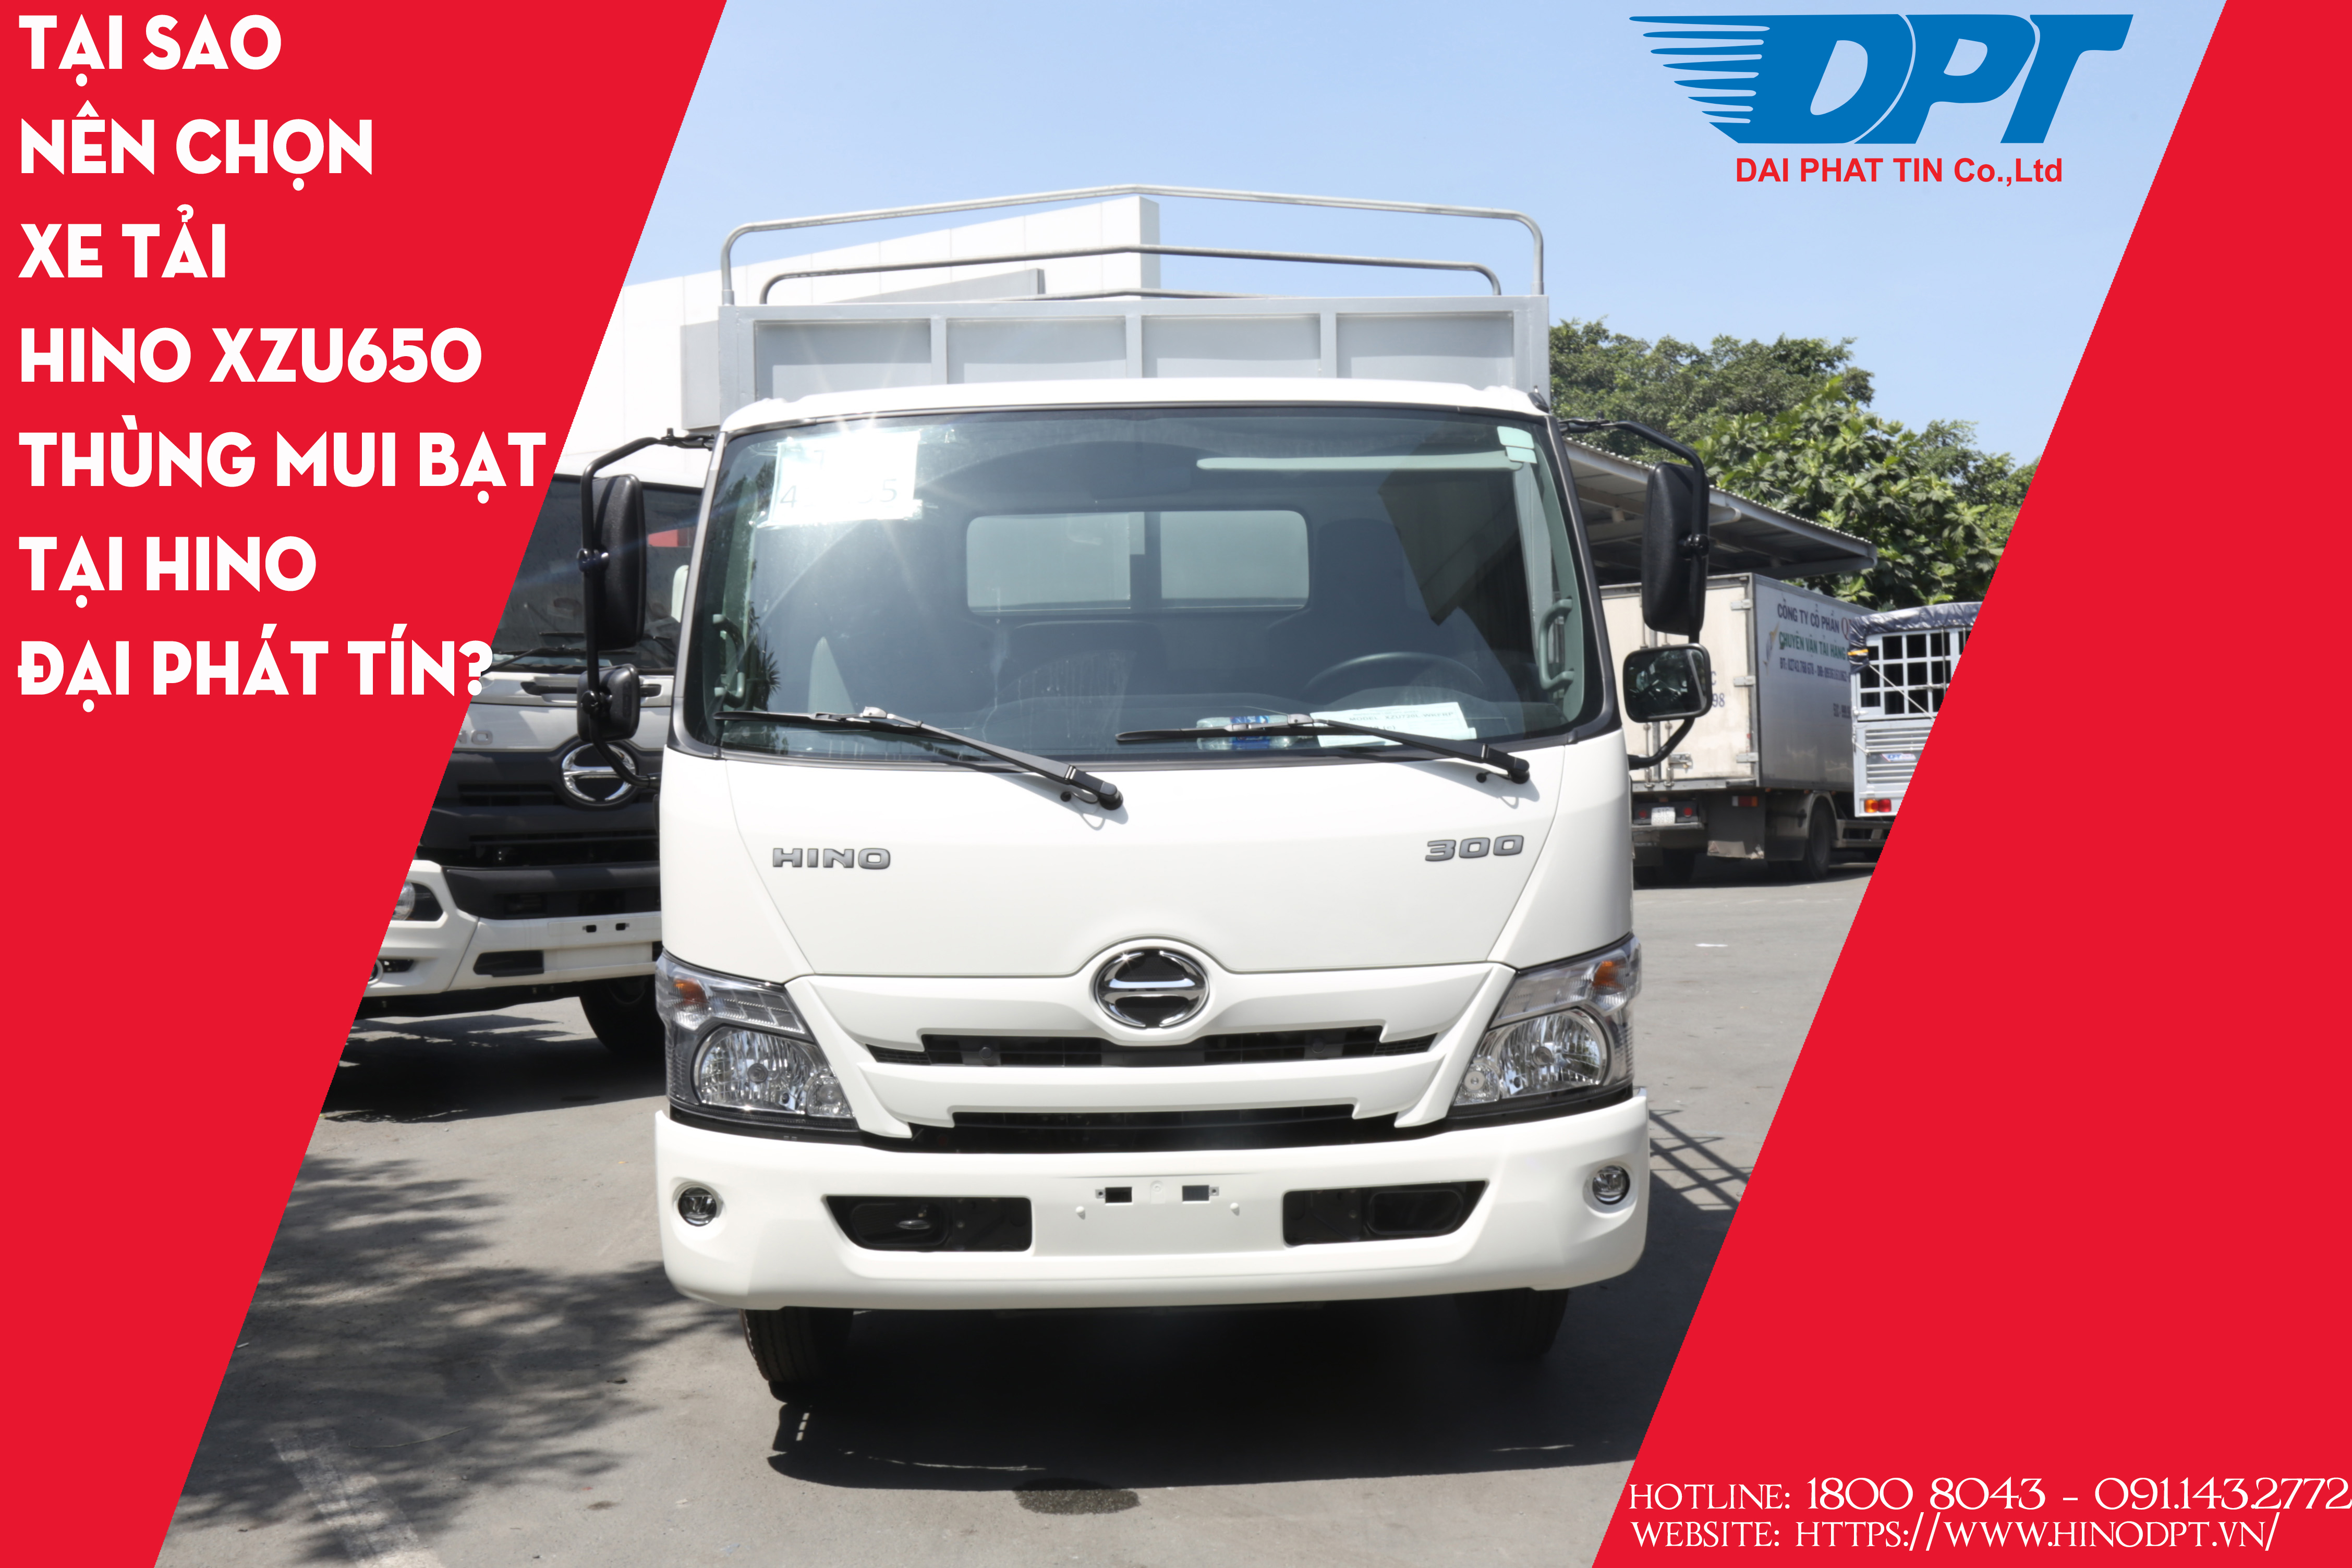 Tại sao nên chọn xe tải Hino XZU650 thùng mui bạt tại Hino Đại Phát Tín?